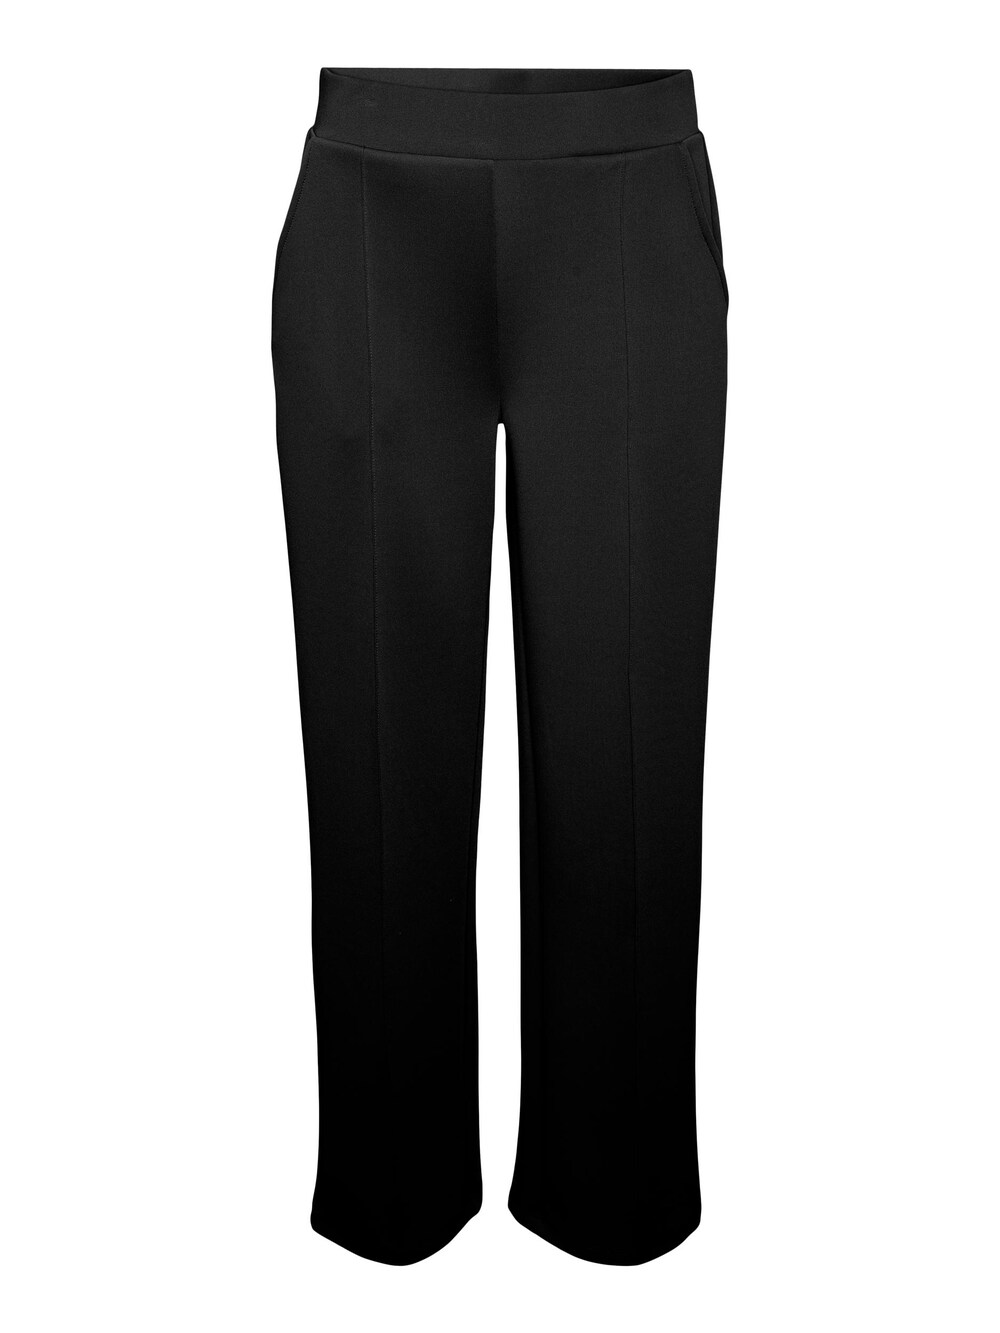 Широкие брюки со складками Vero Moda Panna, черный